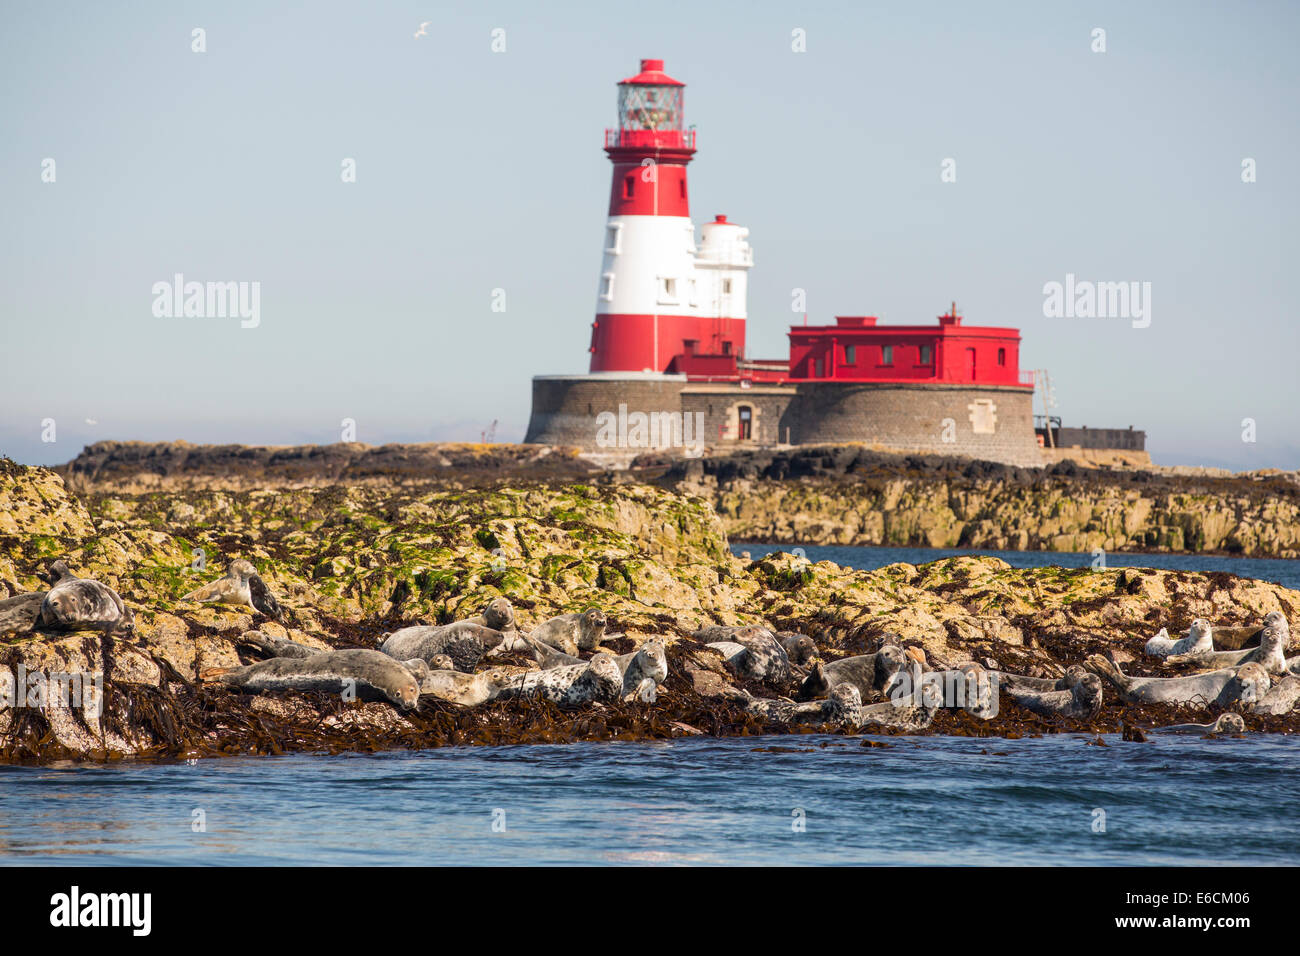 Les phoques communs, Phoca vitulina, sur l'îles Farne, Northumberland, Angleterre, avec le phare de Longstone que Grace Darling réalisé son célèbre de sauvetage. Banque D'Images